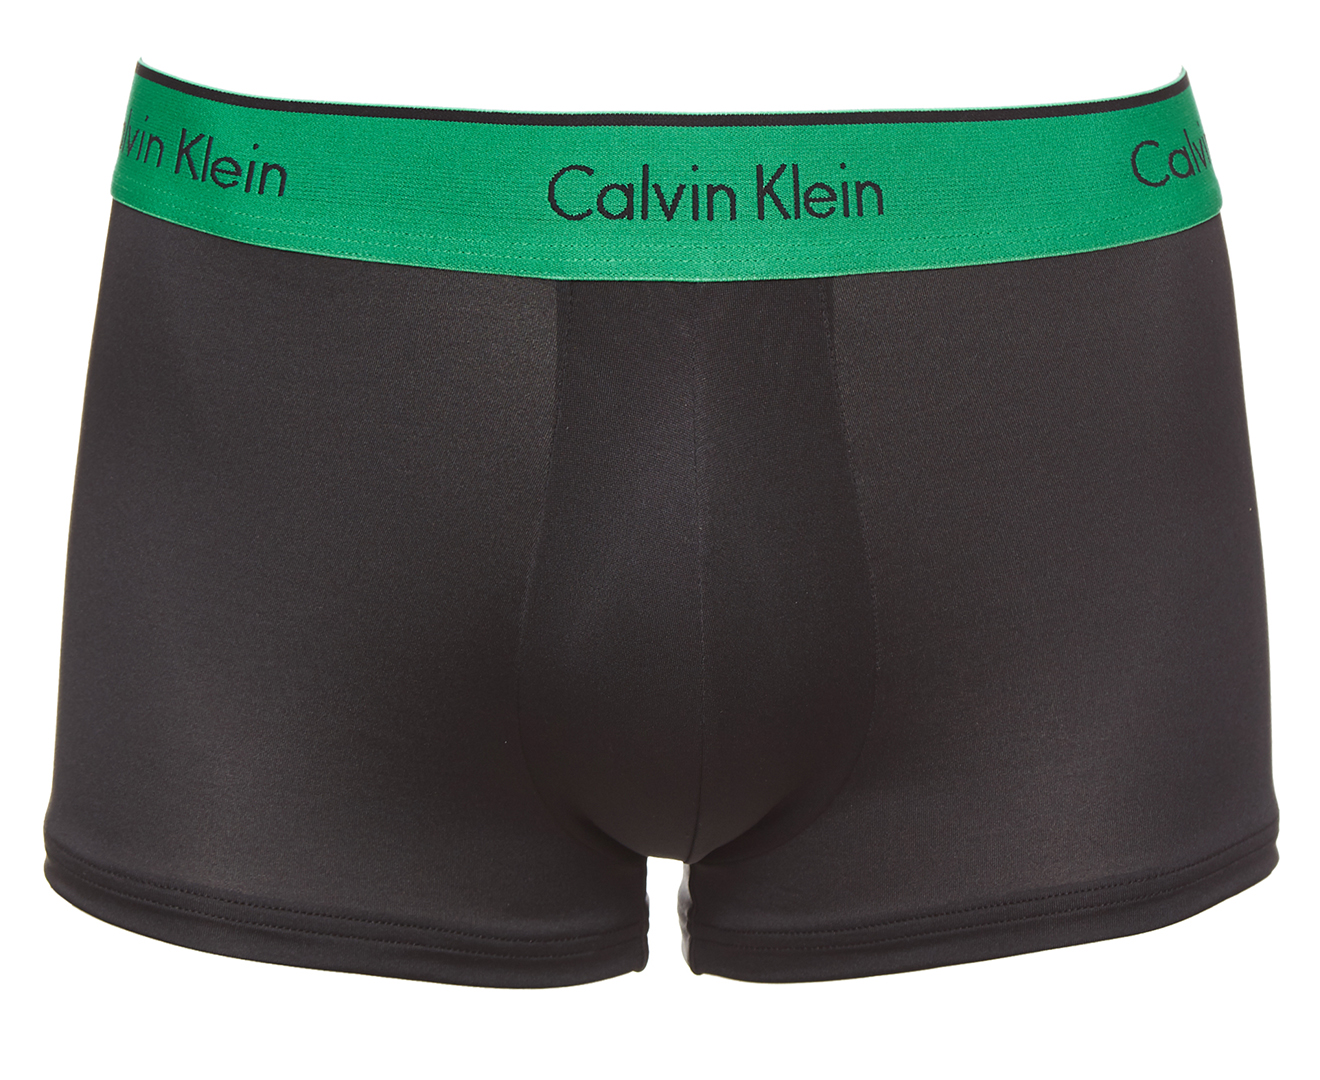 Calvin Klein Men's Microfibre Stretch Low Rise Trunks 3-Pack - Black/Multi | Catch.co.nz